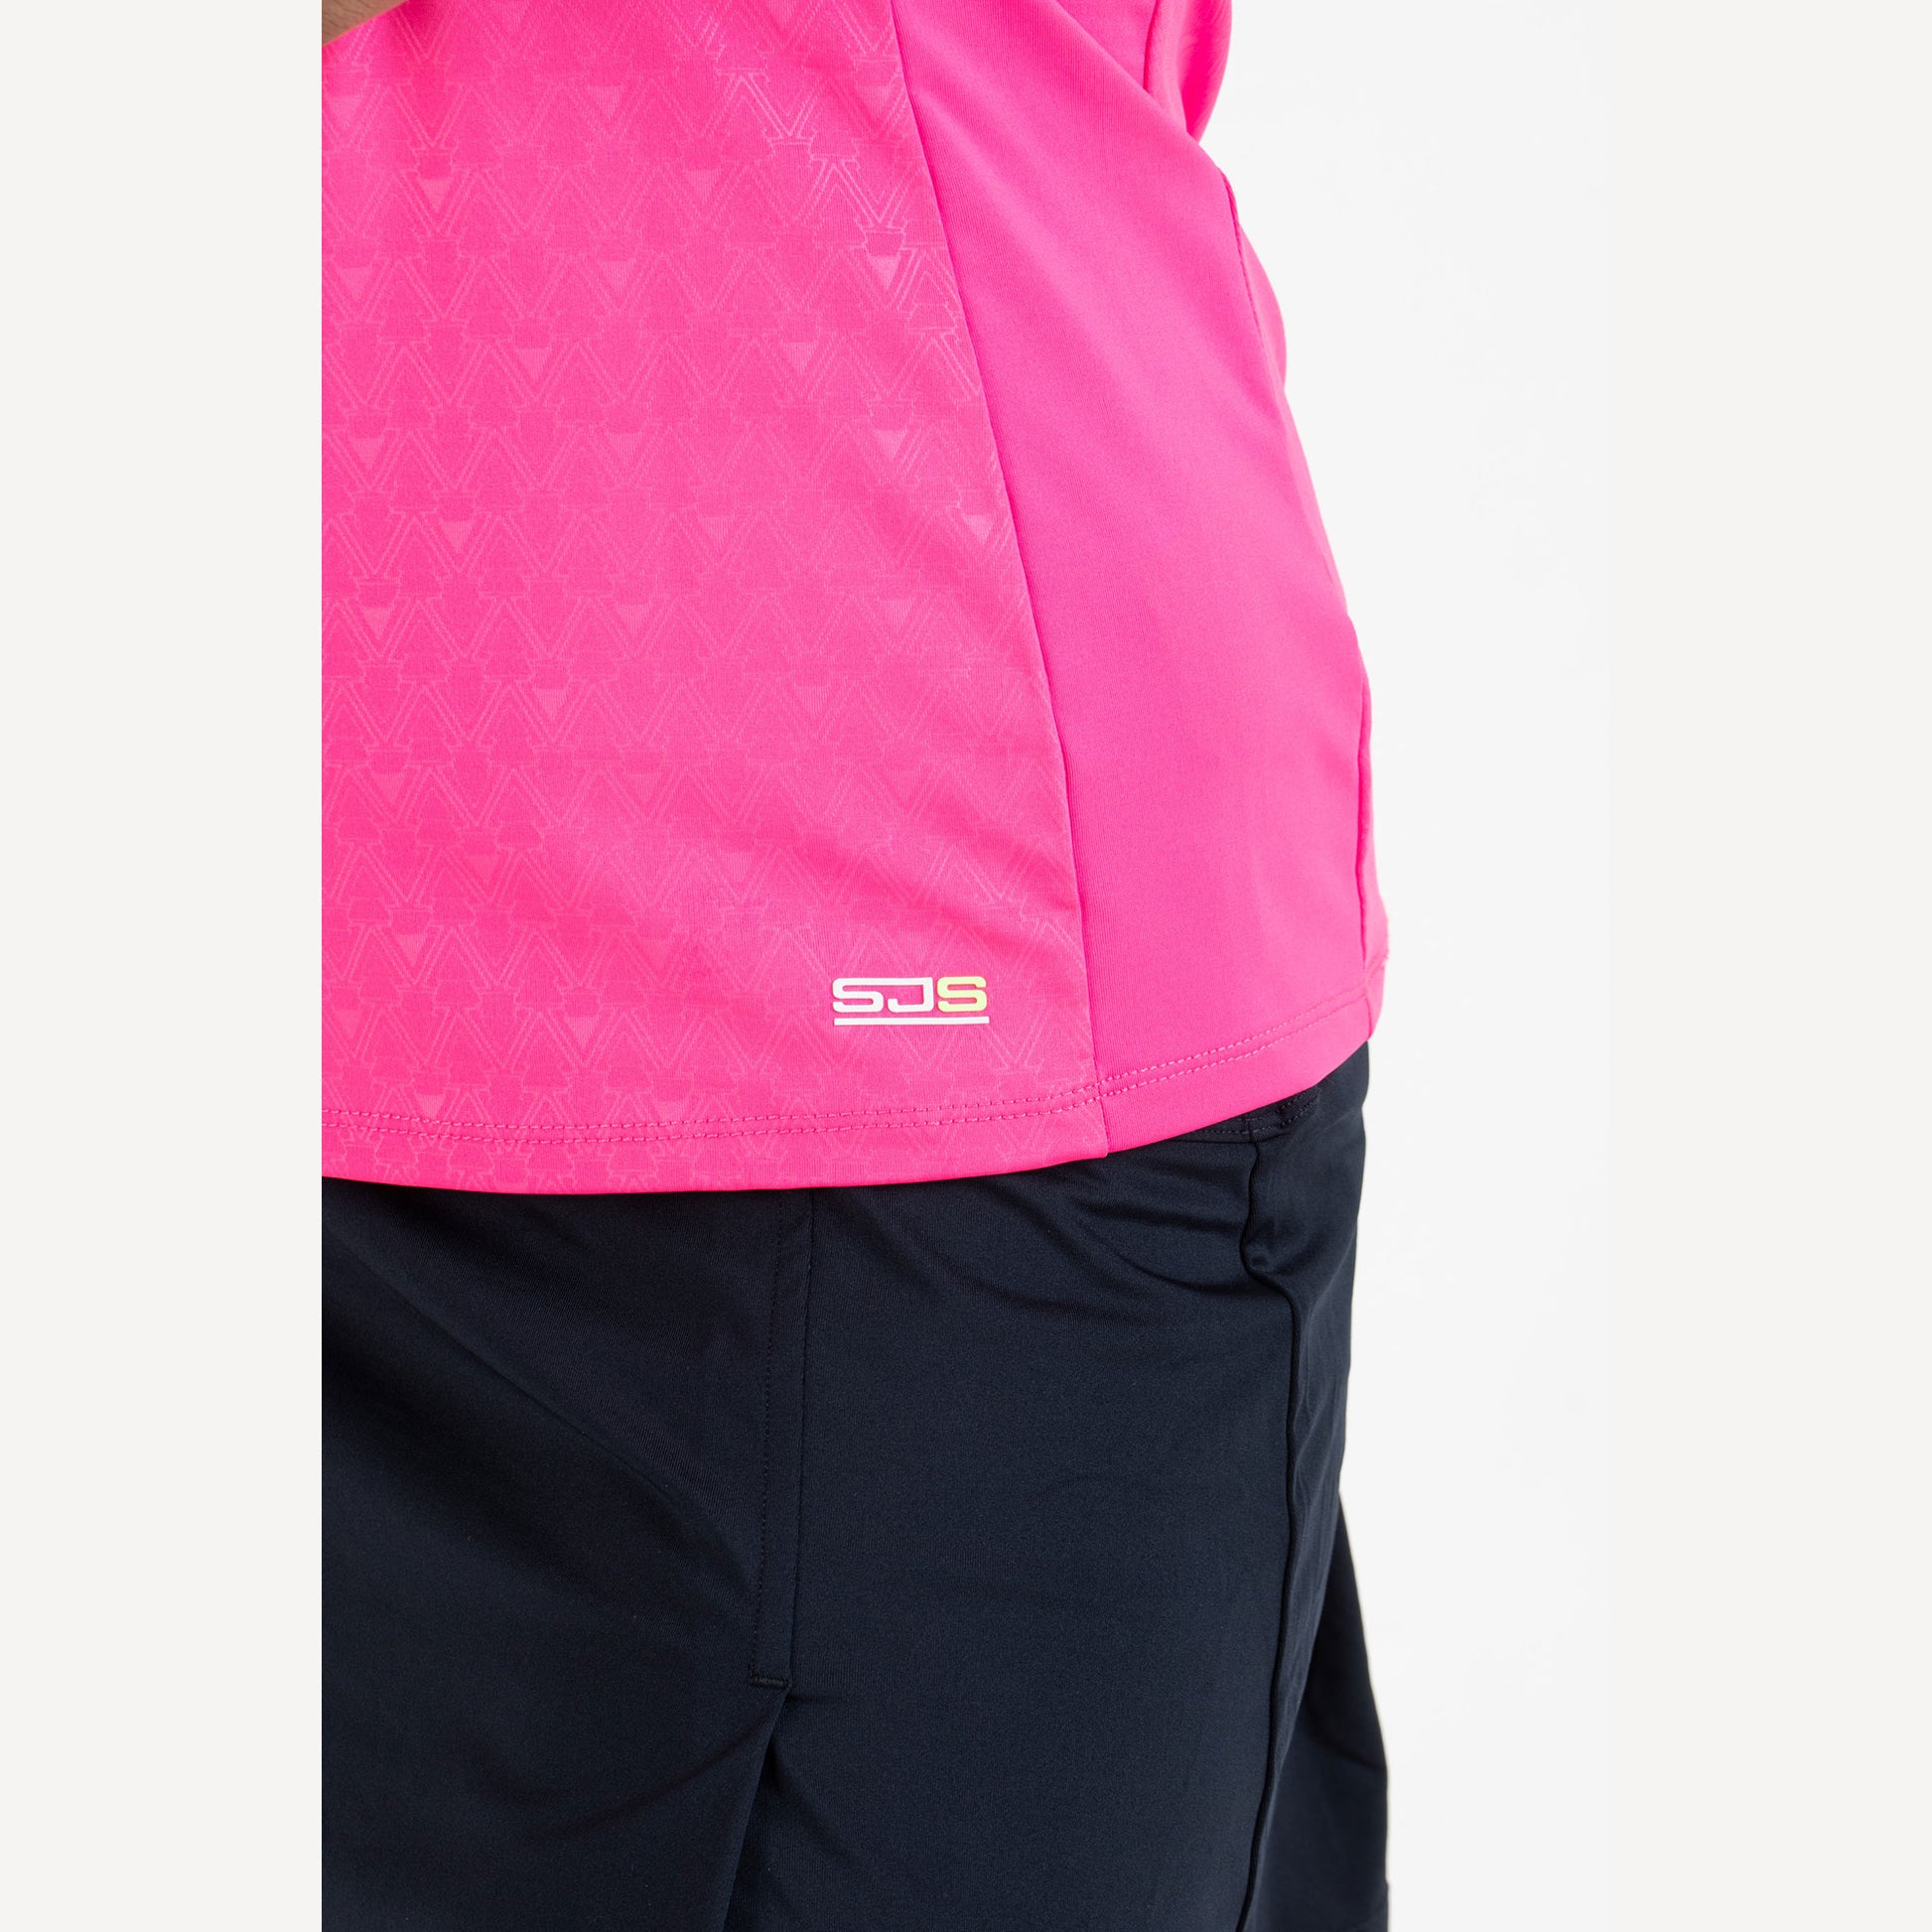 Sjeng Sports Dianne Women's Tennis Shirt Pink (4)